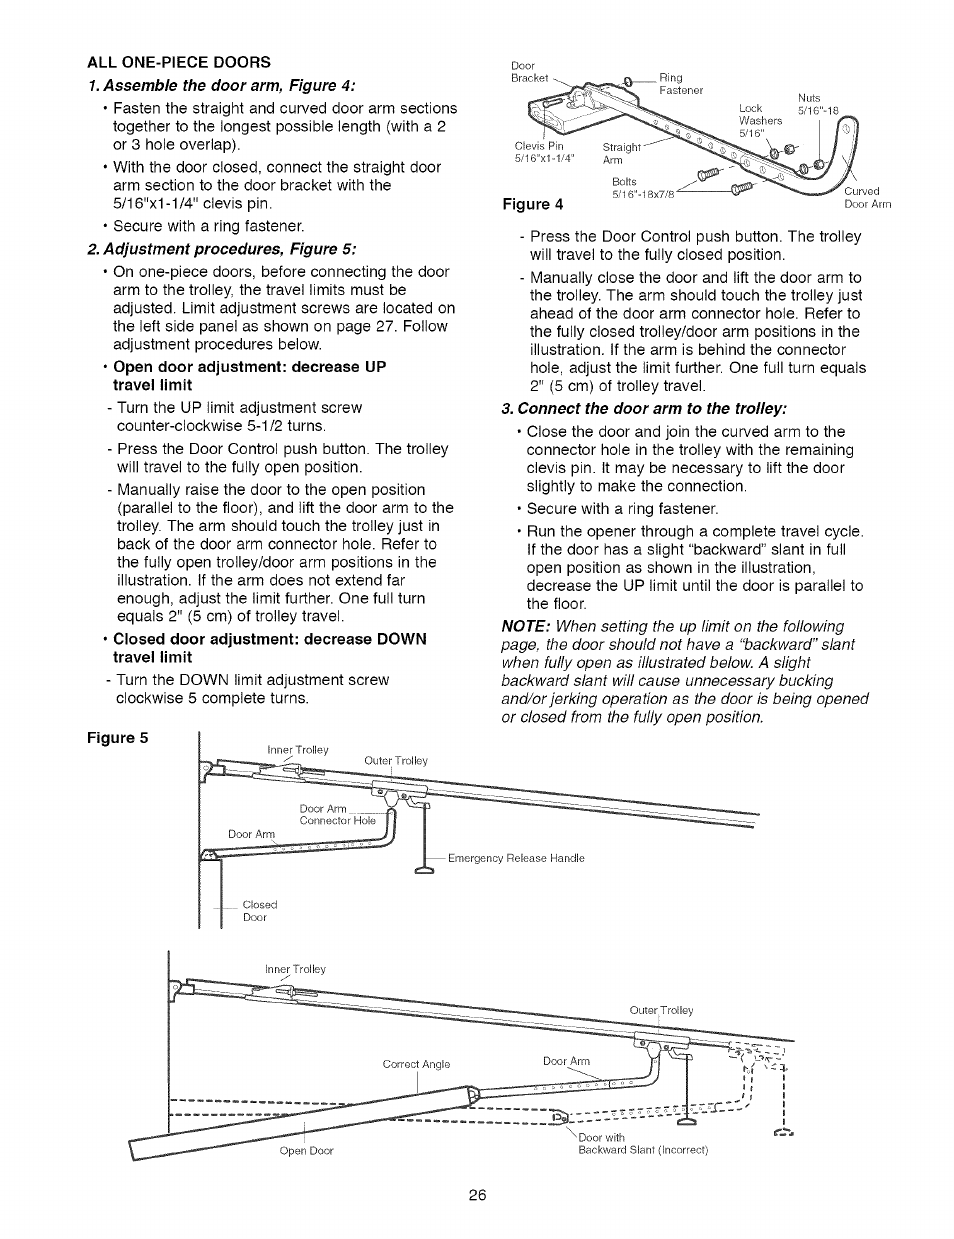 All One Piece Doors Craftsman 1 2 Hp Garage Door Opener Model 139 User Manual Page 26 40 Original Mode